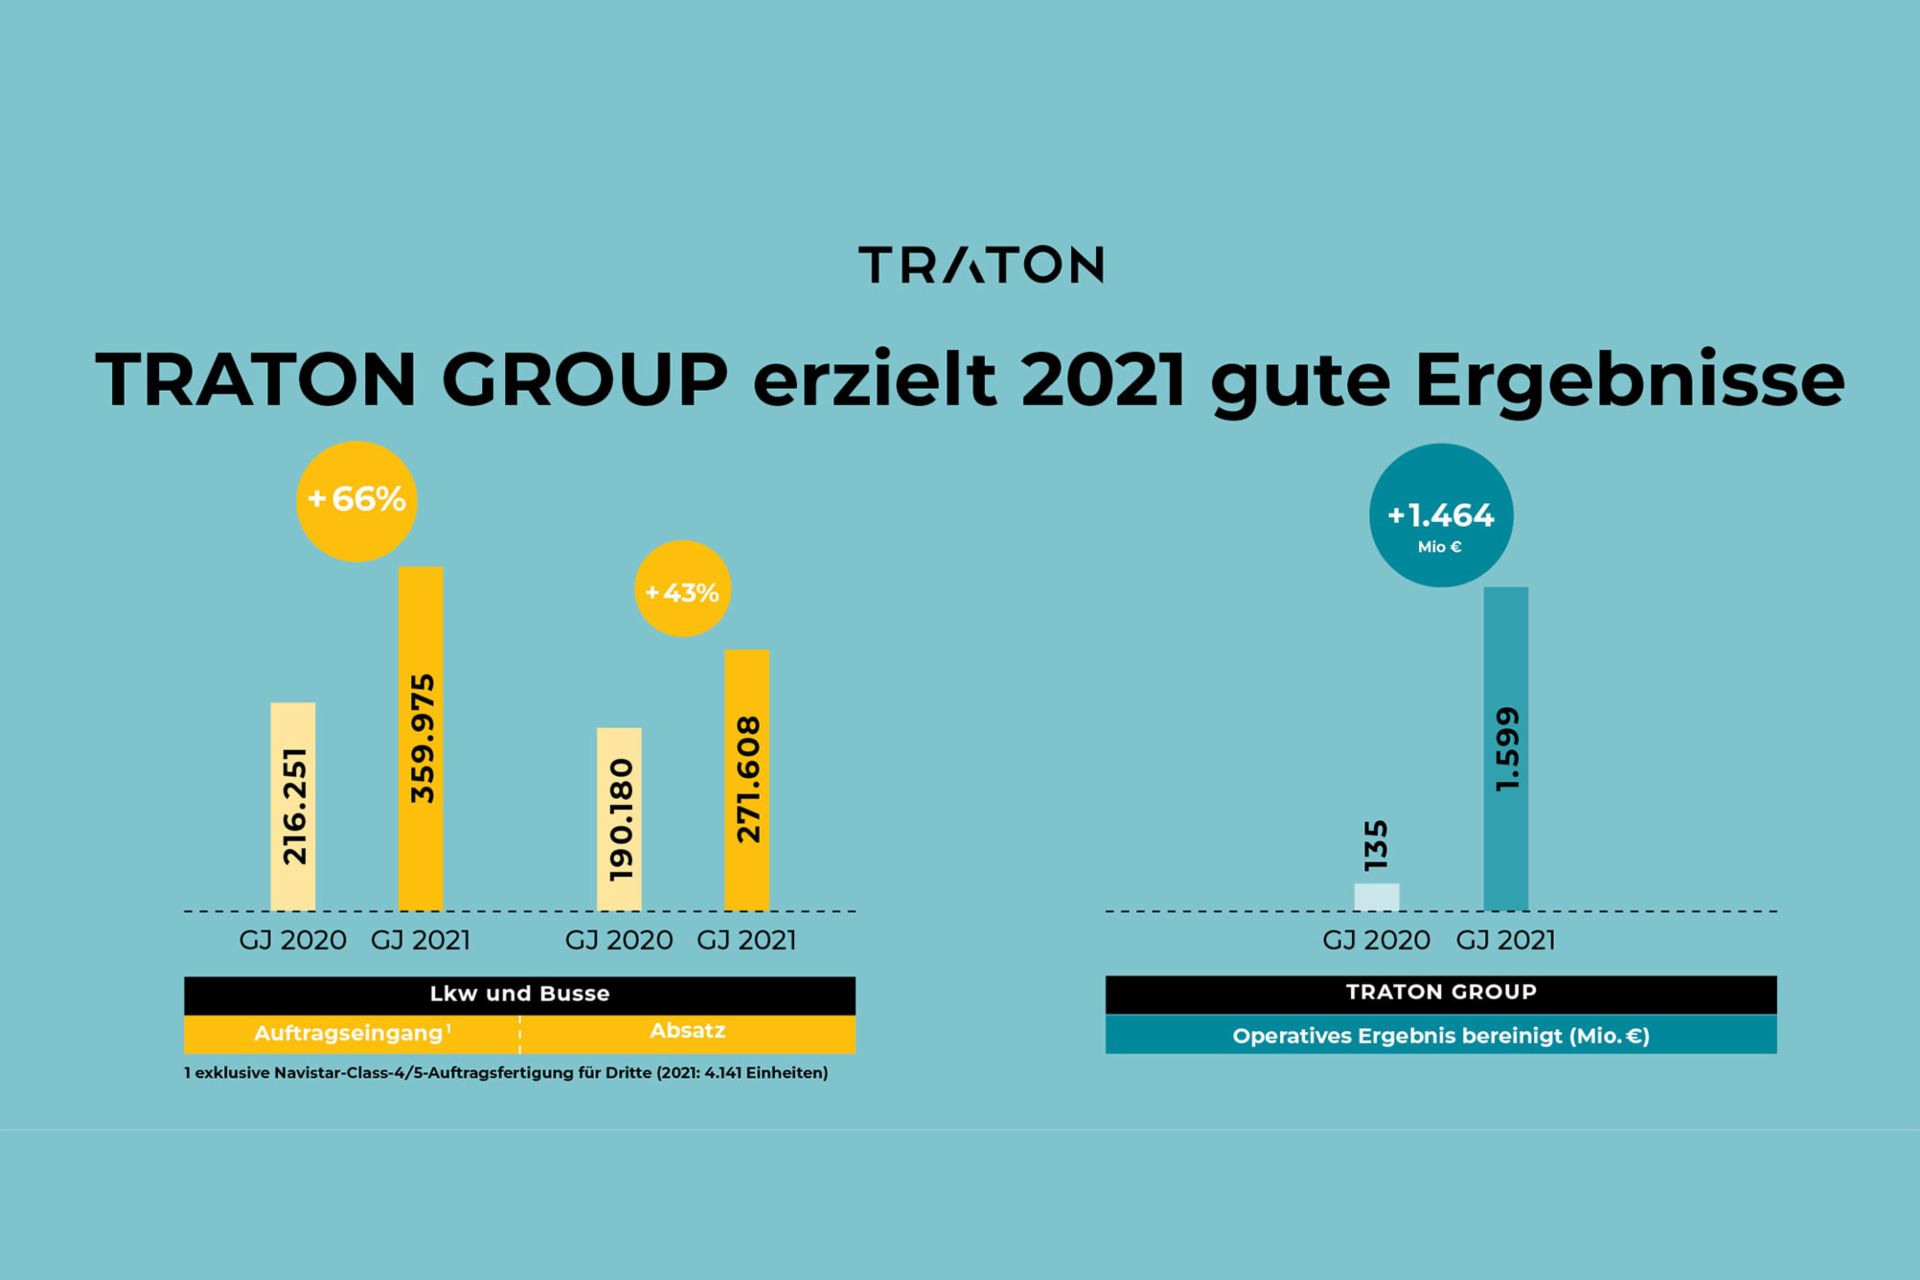 TRATON GROUP erziehlt 2021 gute Ergebnisse Grafik Auftragseingang, Absatz und Operatives Ergebnis bereinigt 